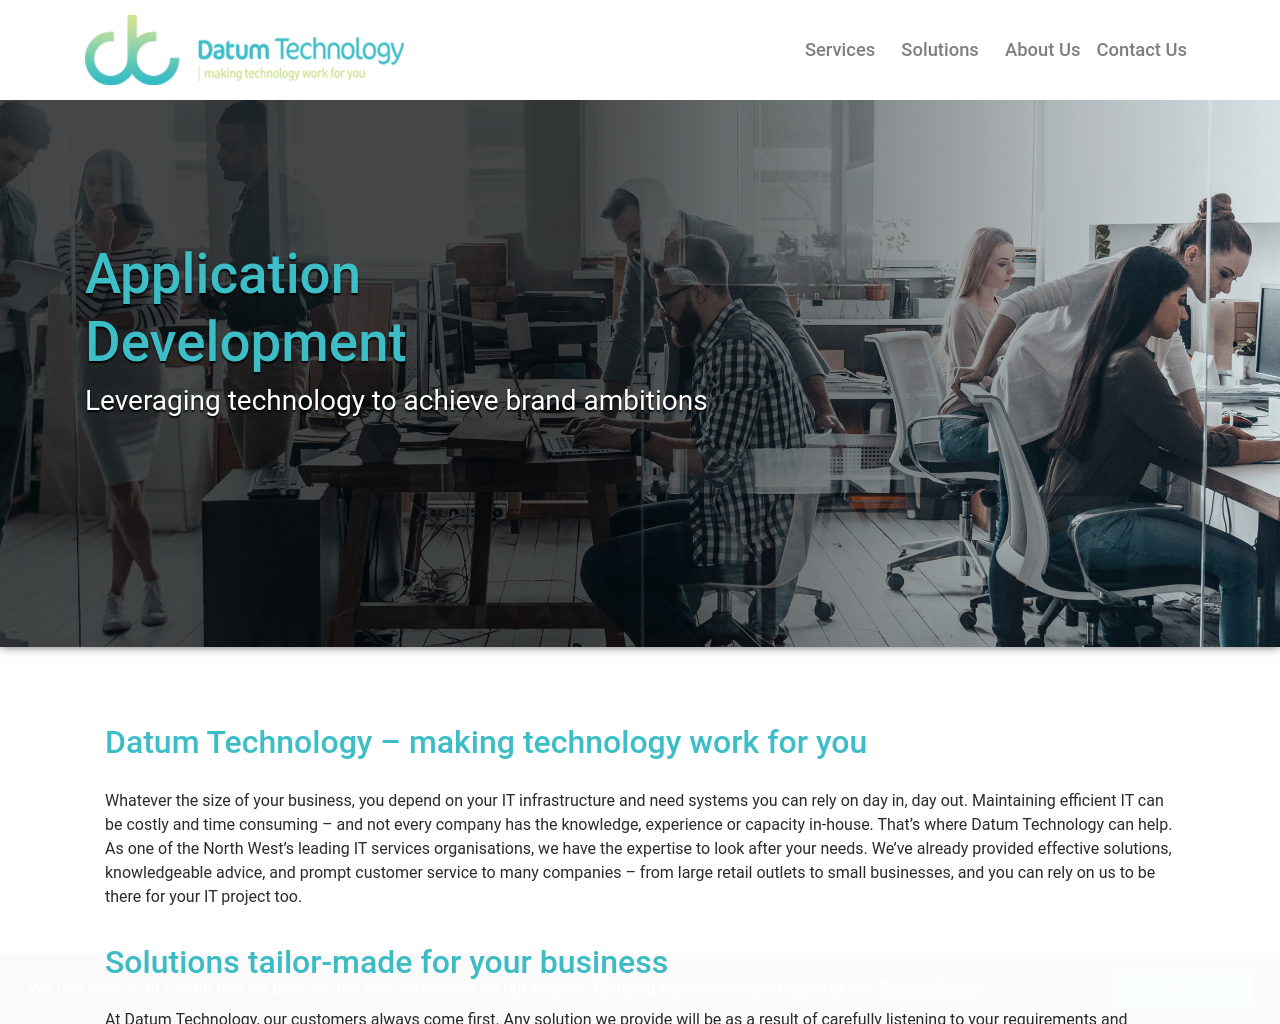 datumtechnology.com